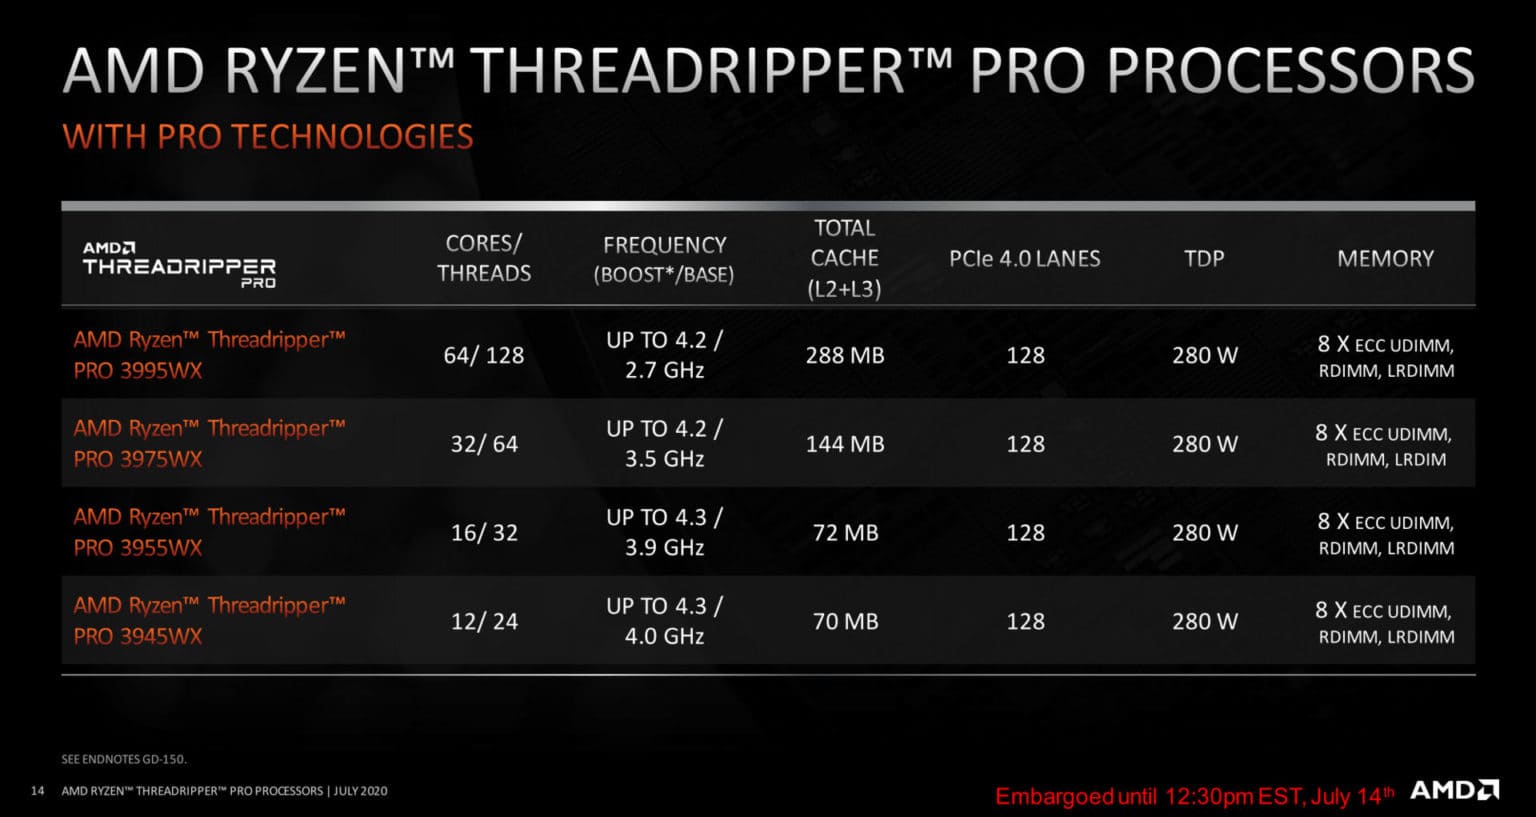 [CÔNG NGHỆ] AMD Ryzen Threadripper PRO - mang lại tiêu chuẩn mới cho sức mạnh của máy trạm làm việc chuyên nghiệp